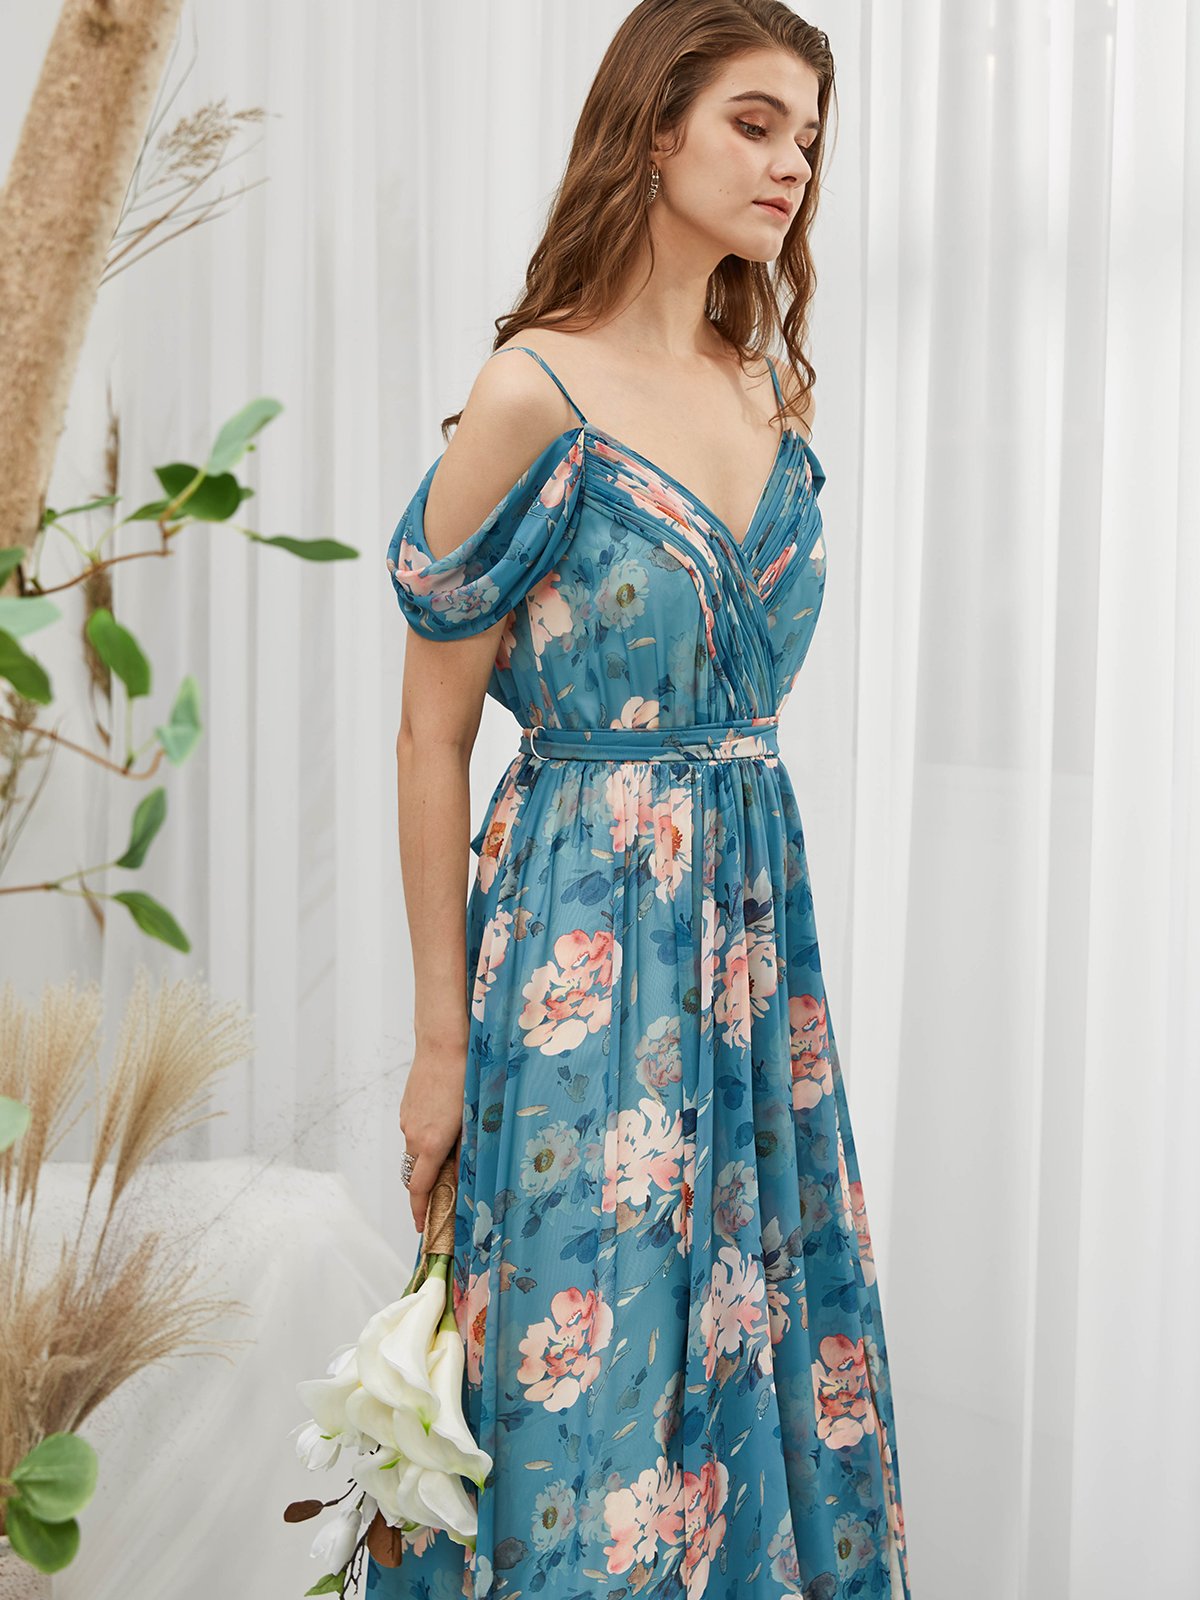 Straps V Neck Off the Shoulder Chiffon Print Floral Teal Floor Length Formal Evening Gown